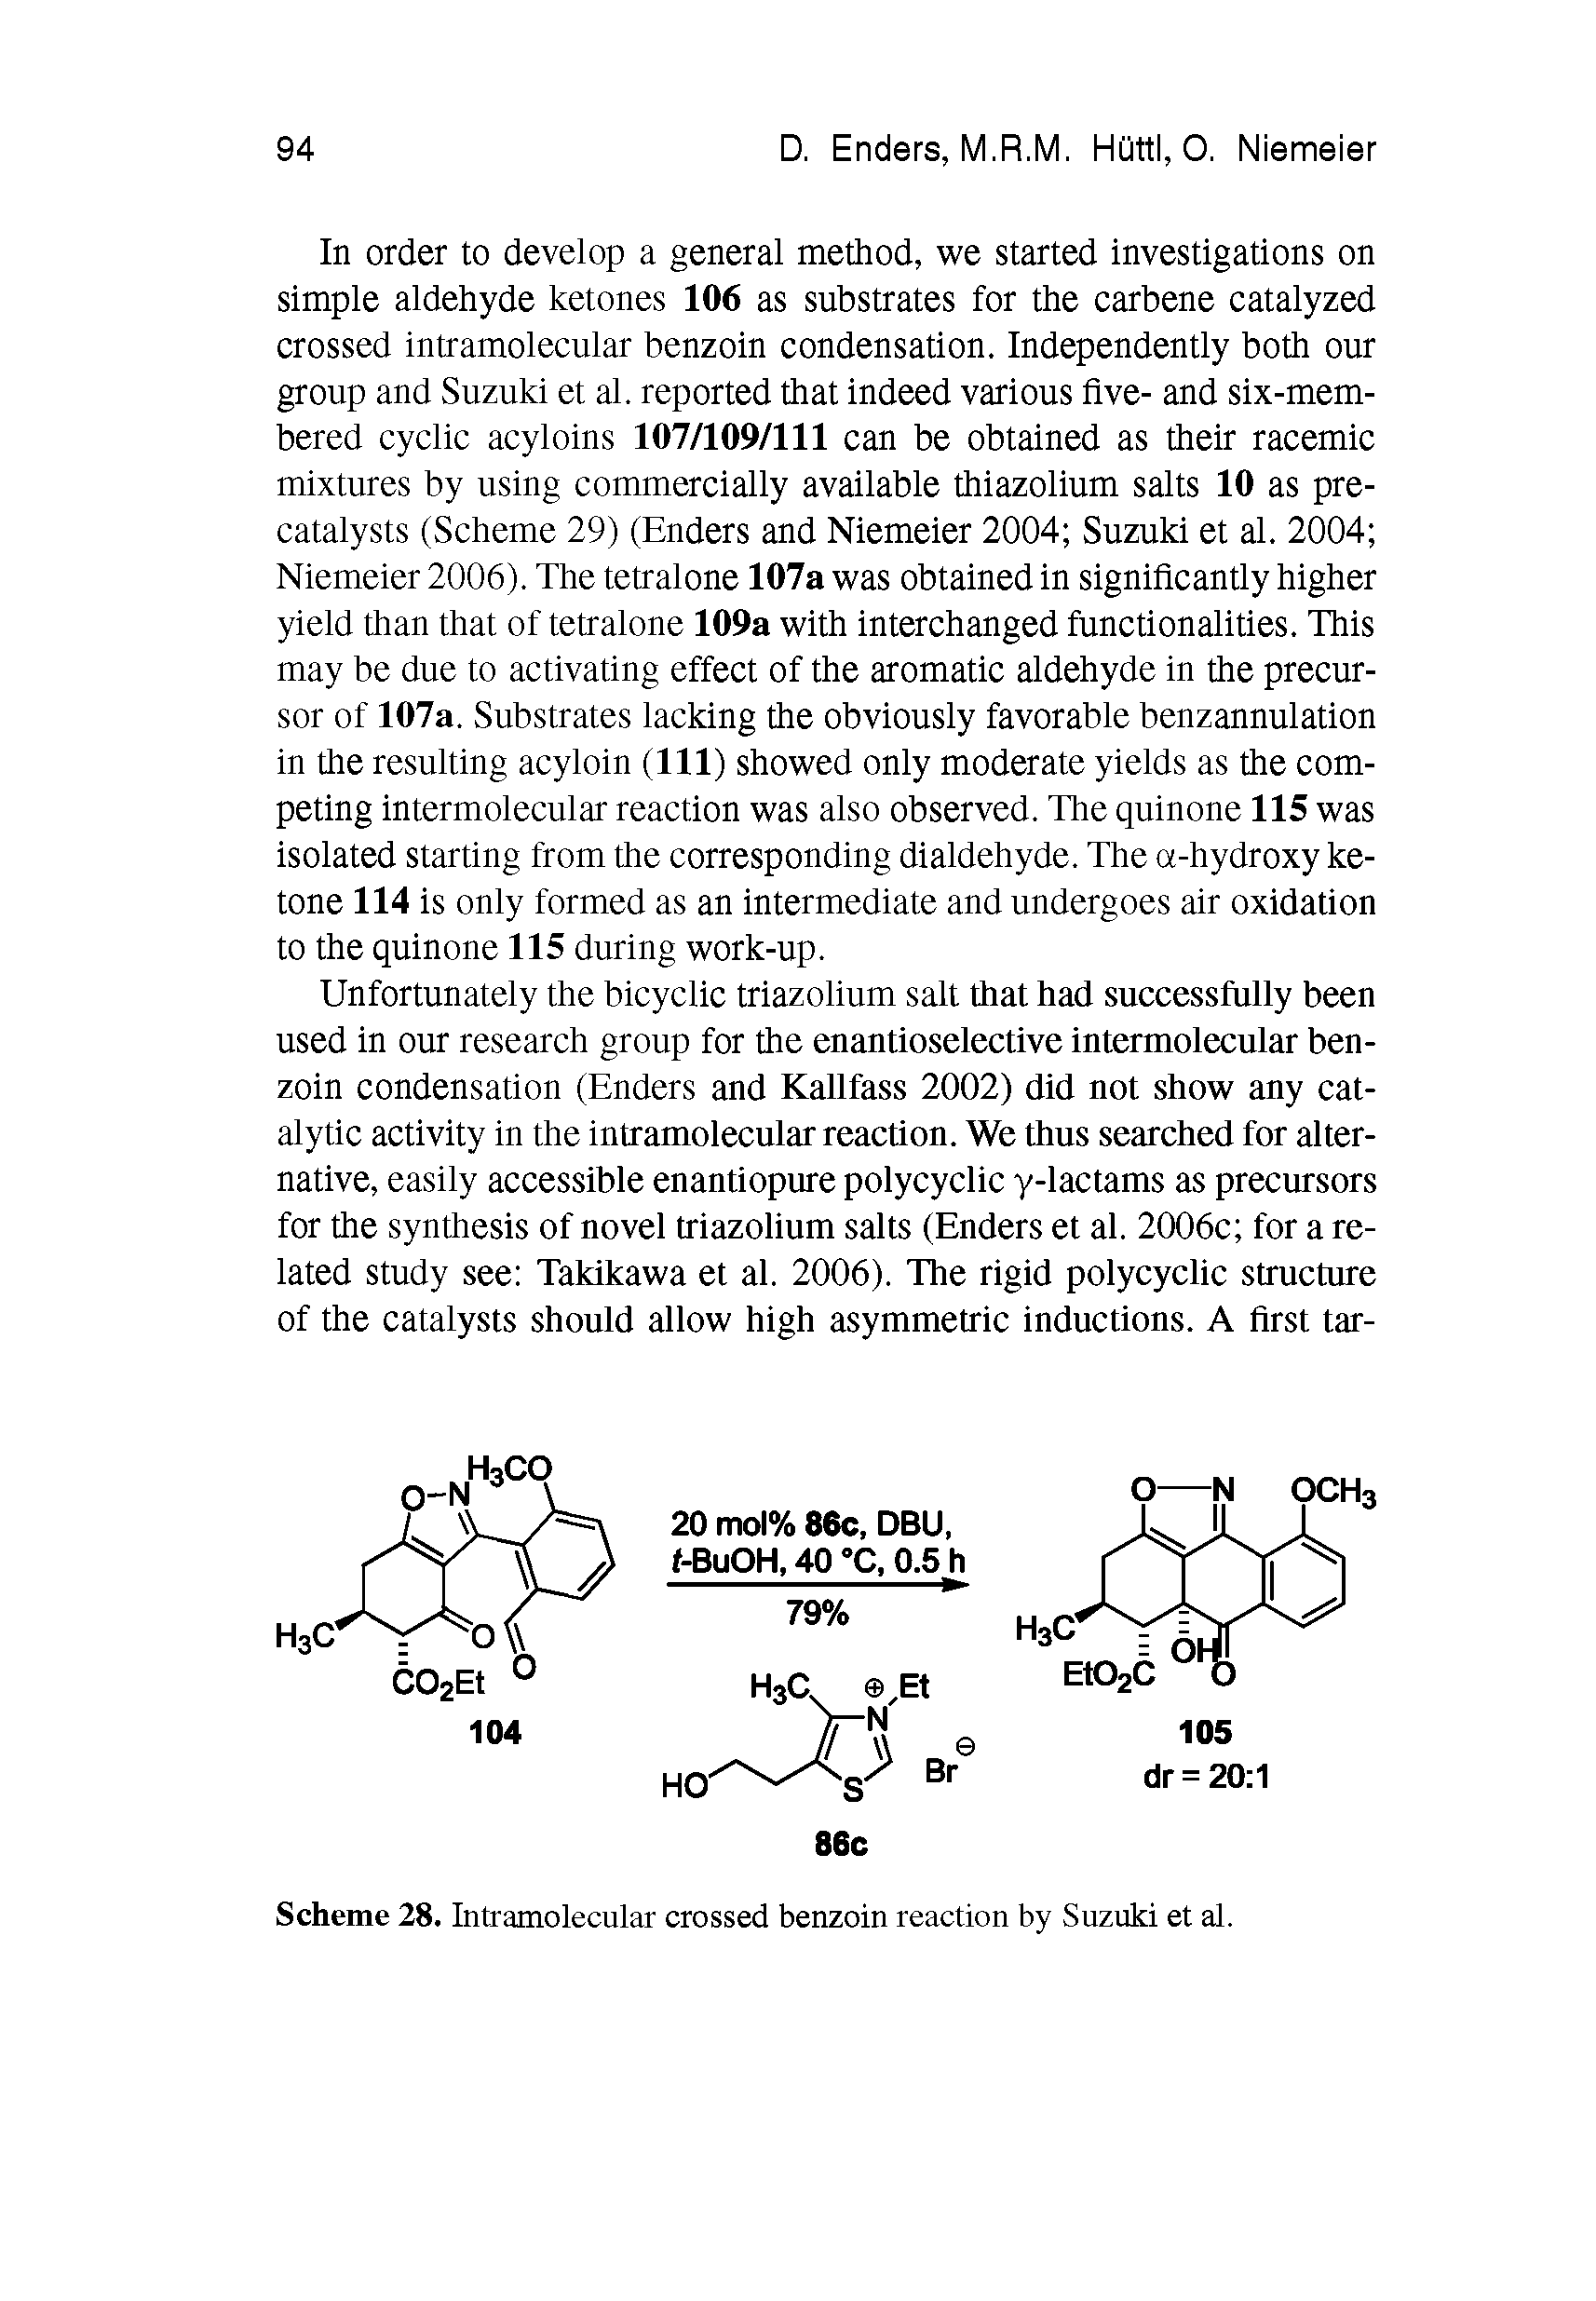 Scheme 28. Intramolecular crossed benzoin reaction by Suzuki et al.